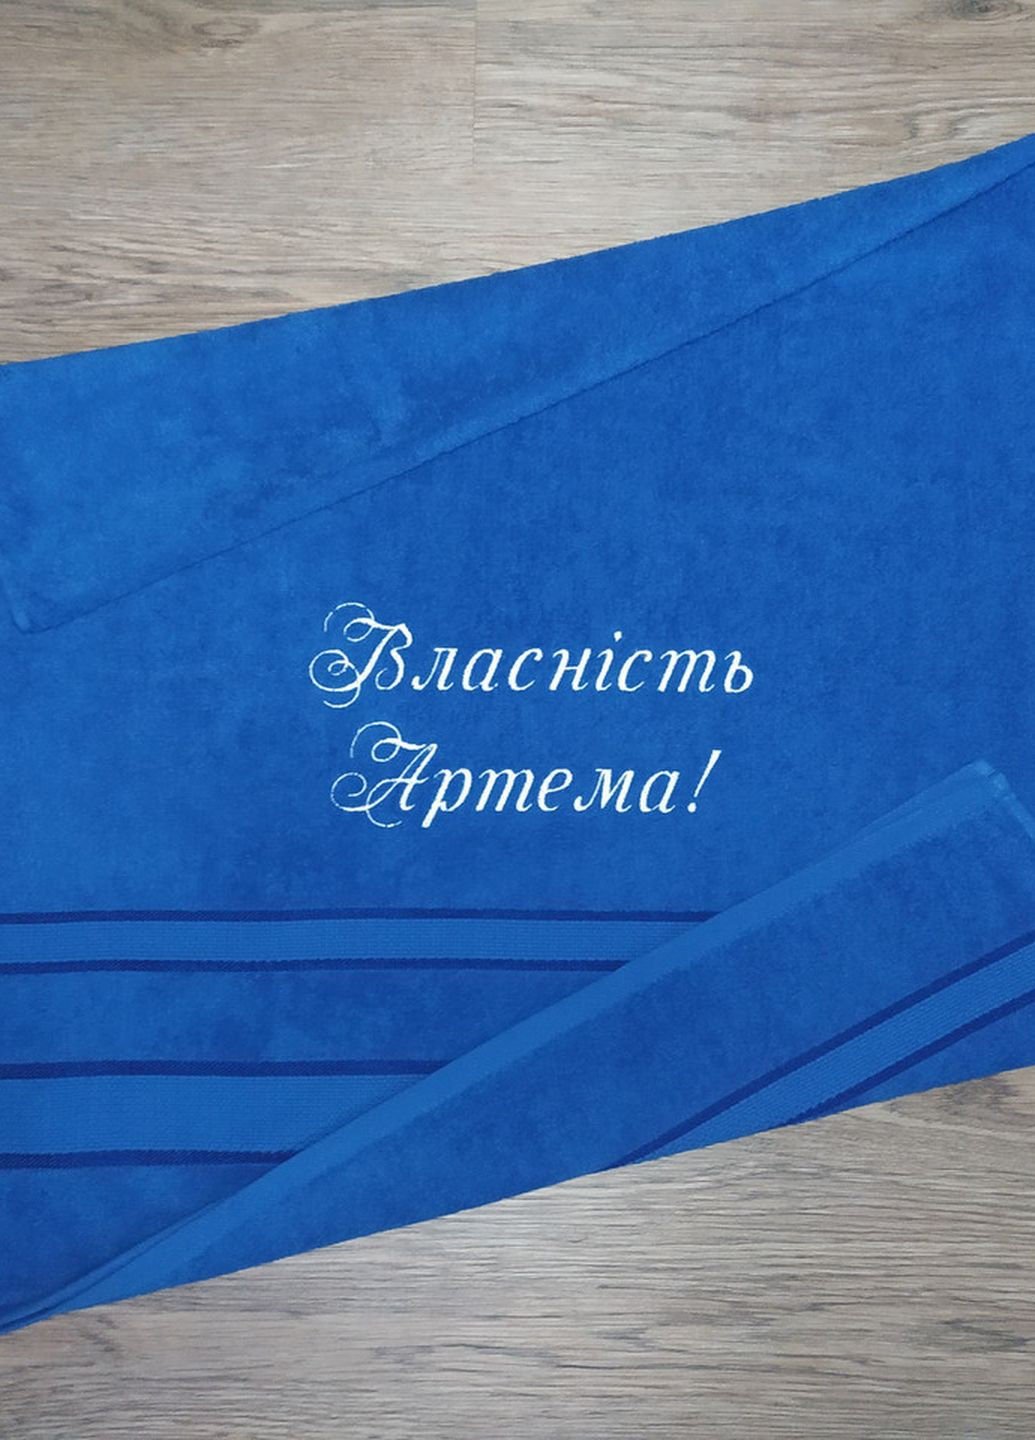 No Brand полотенце с именной вышивкой махровое банное 70*140 синий артем 00303 однотонный синий производство - Украина